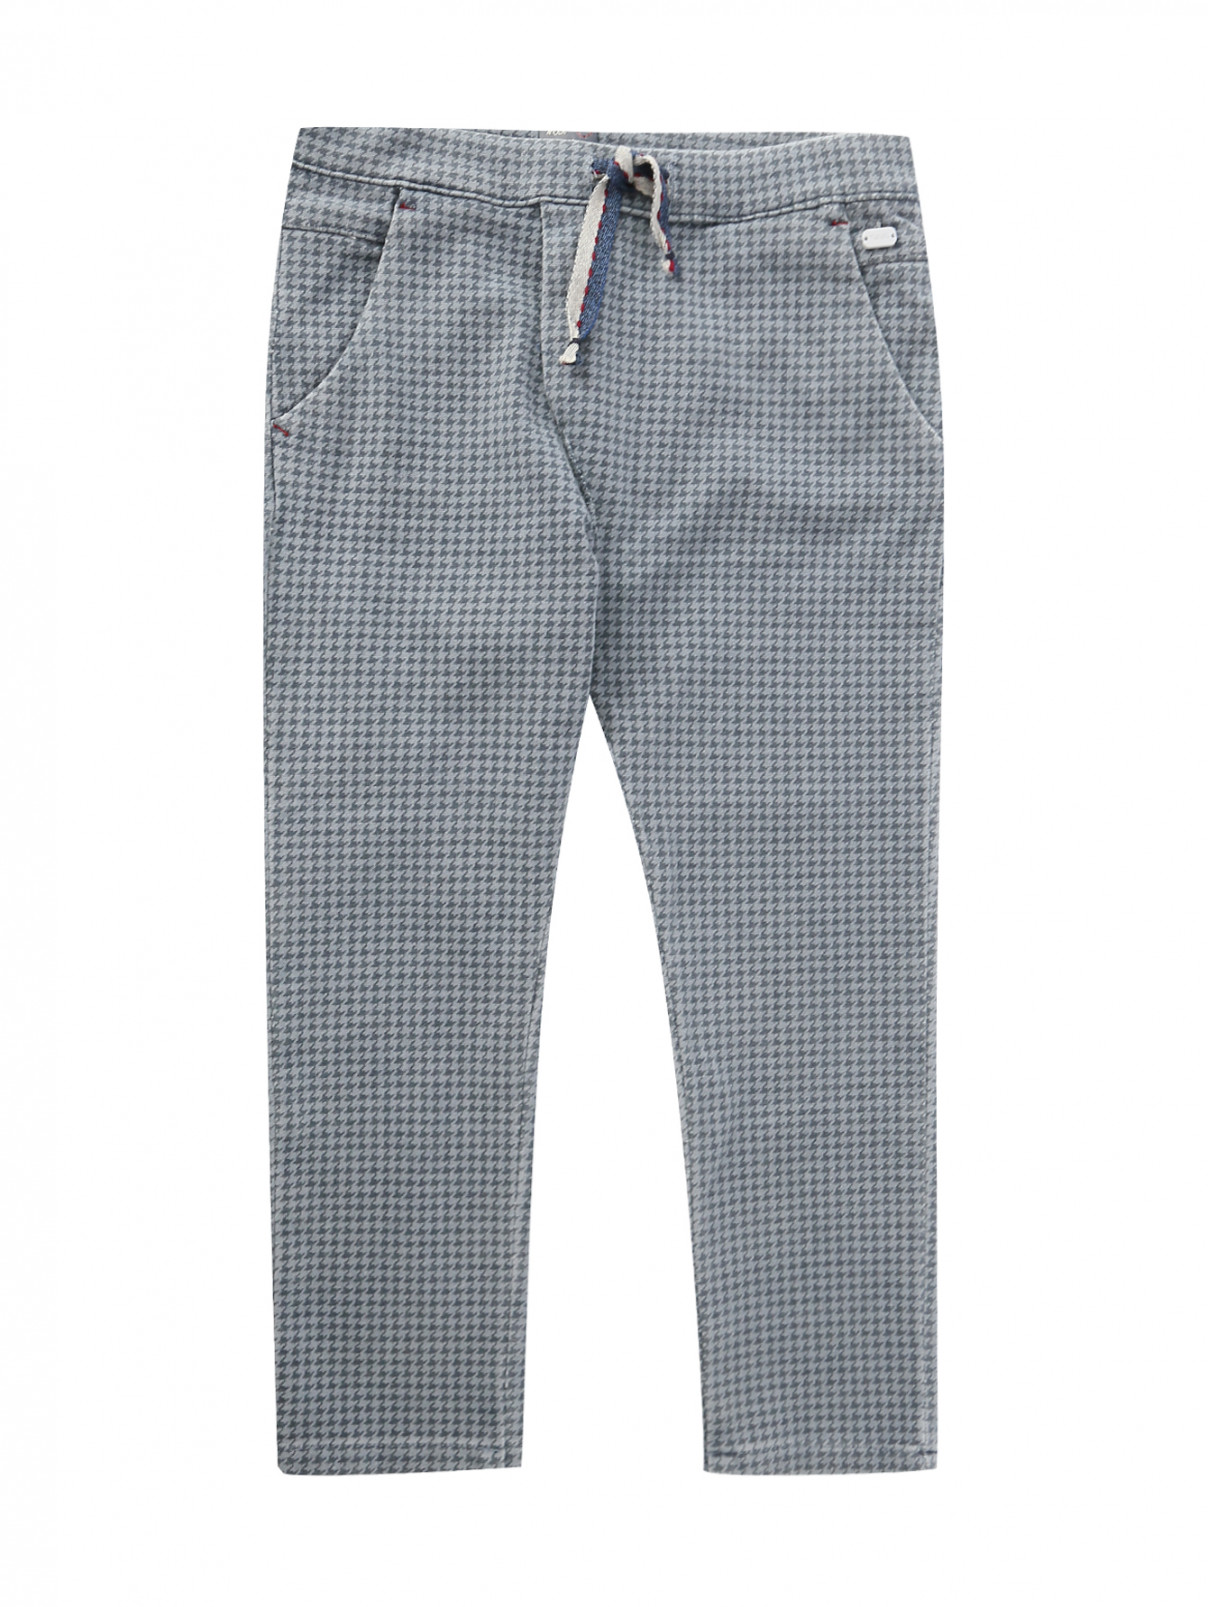 Трикотажные брюки на резинке с узором Nanan  –  Общий вид  – Цвет:  Серый